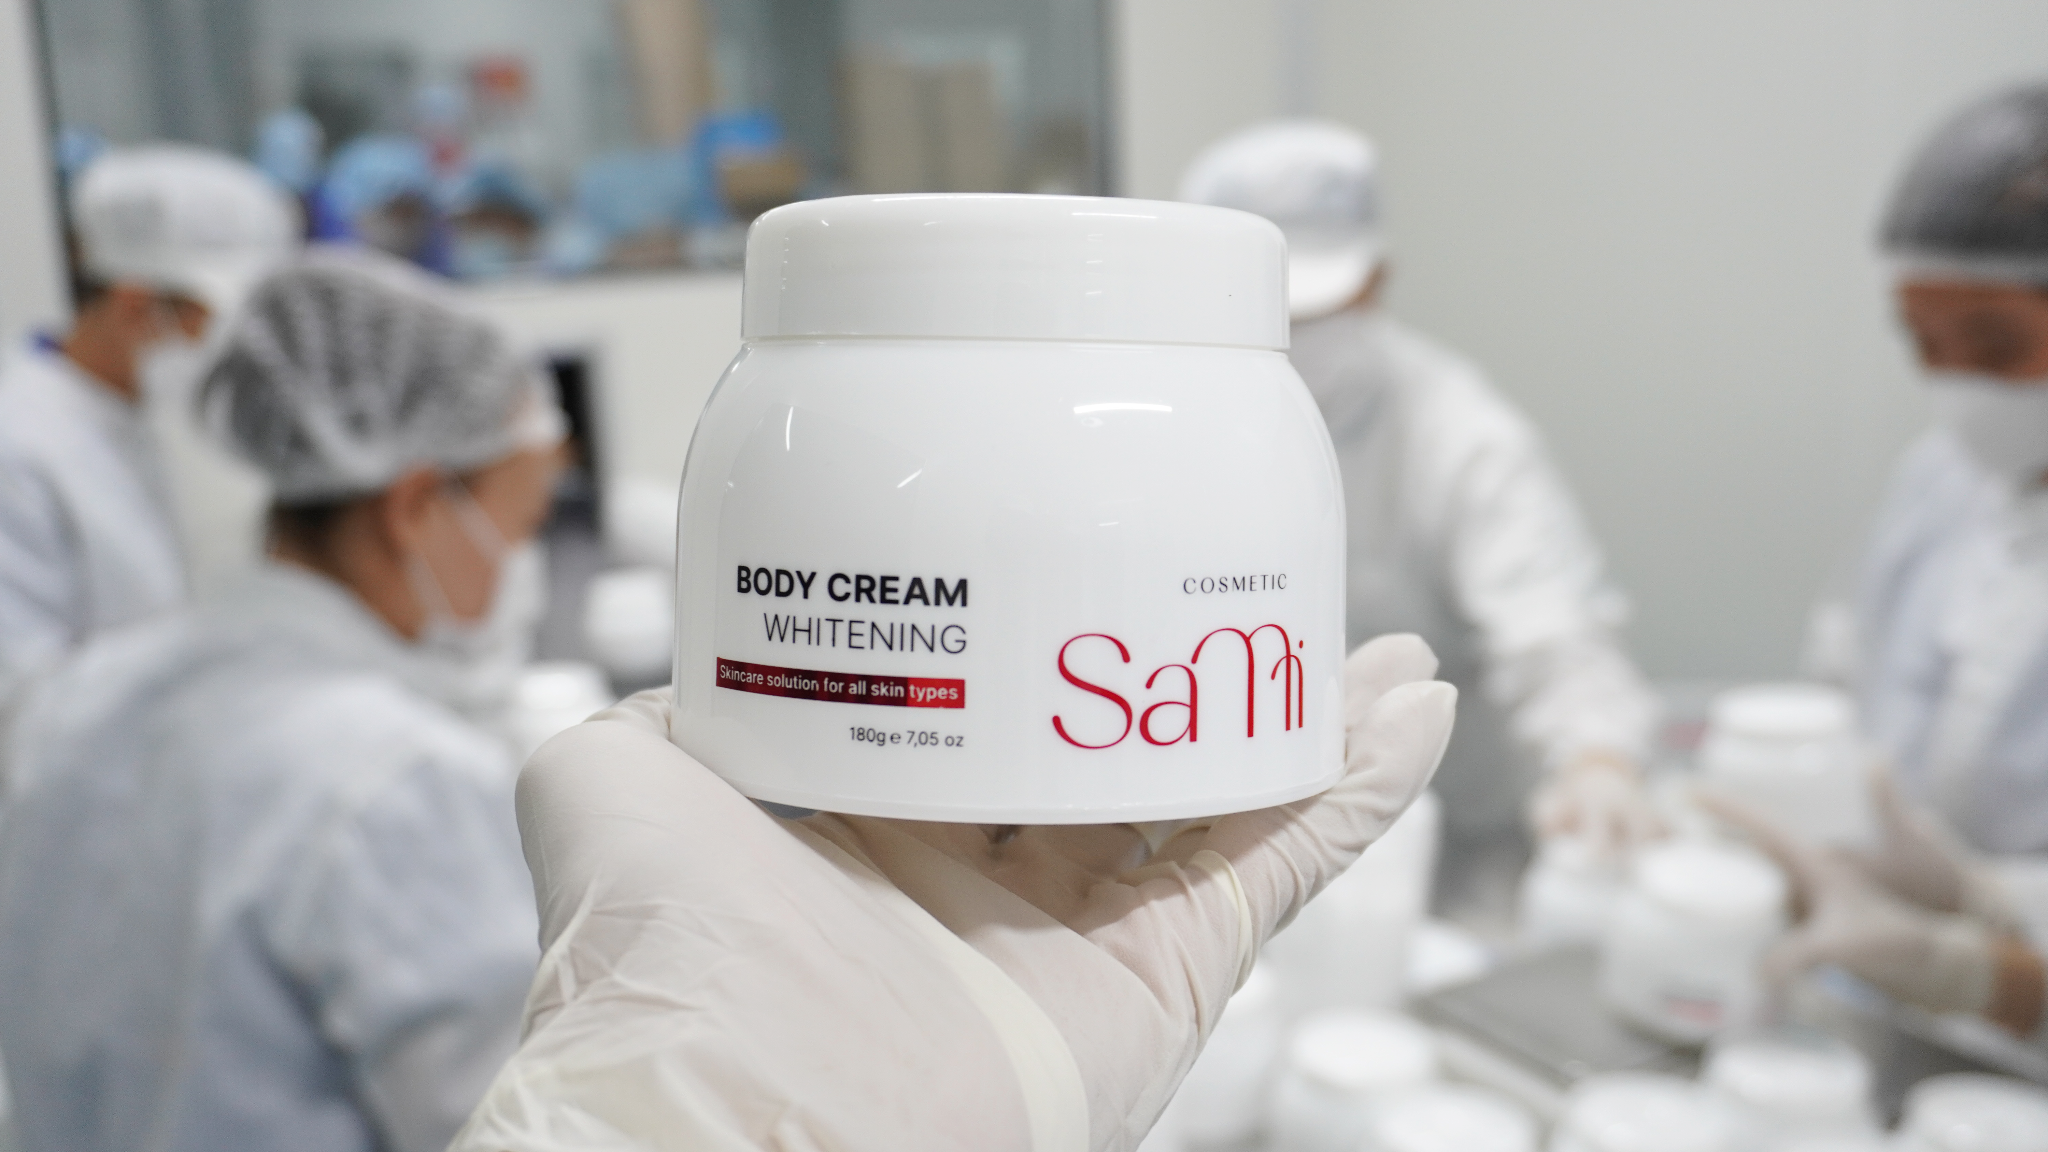 “Siêu phẩm” dưỡng trắng toàn thân Body Sami, hứa hẹn cho sự thành công của thương hiệu Sami - 3